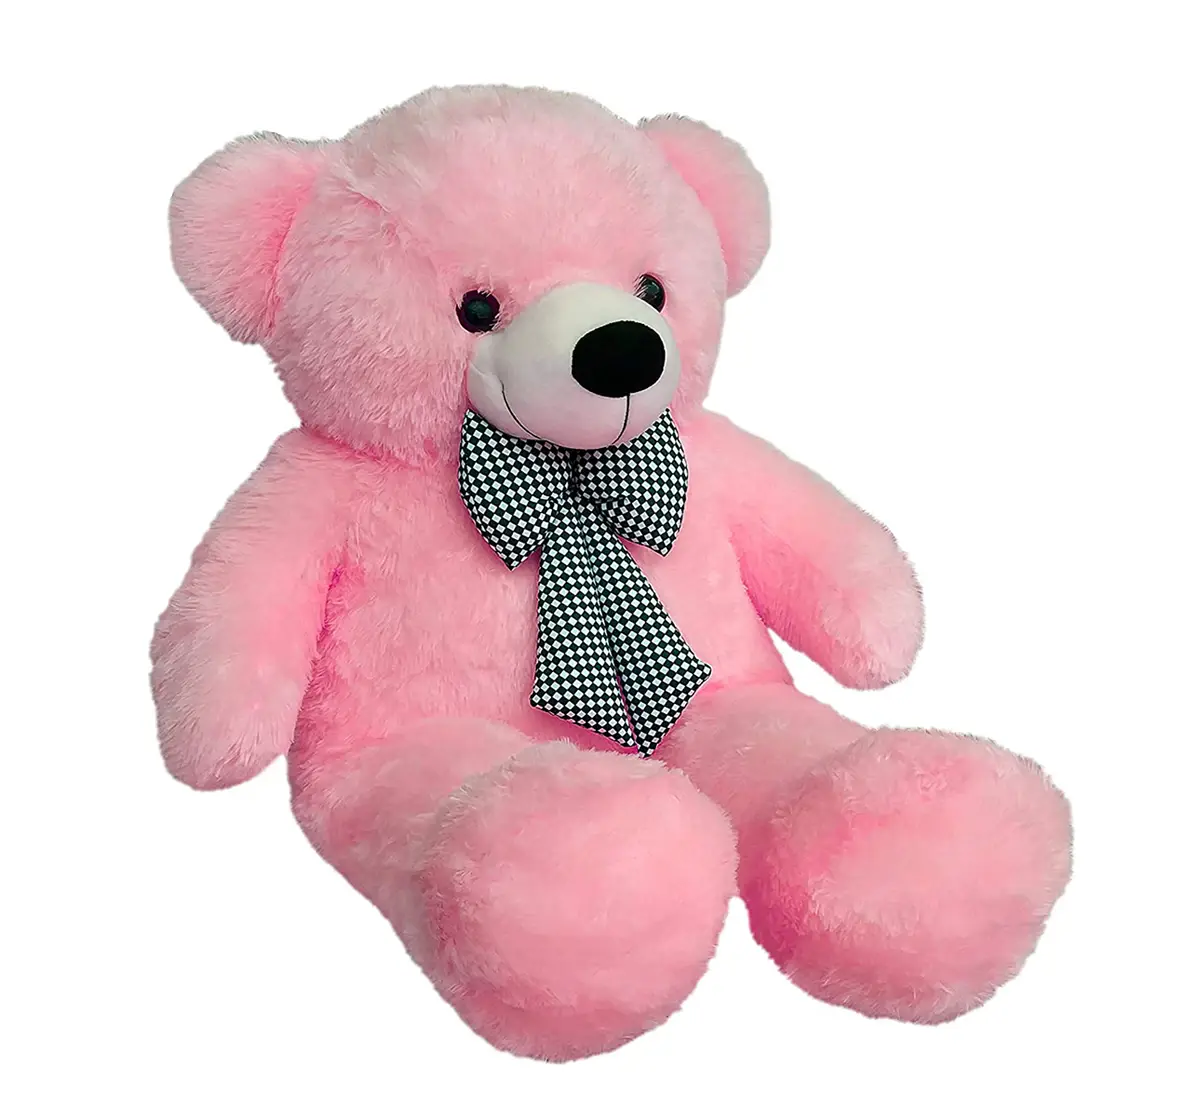 Huggable Plush Teddy Bear With Neck Bow by Webby, Pink, 3 Feet